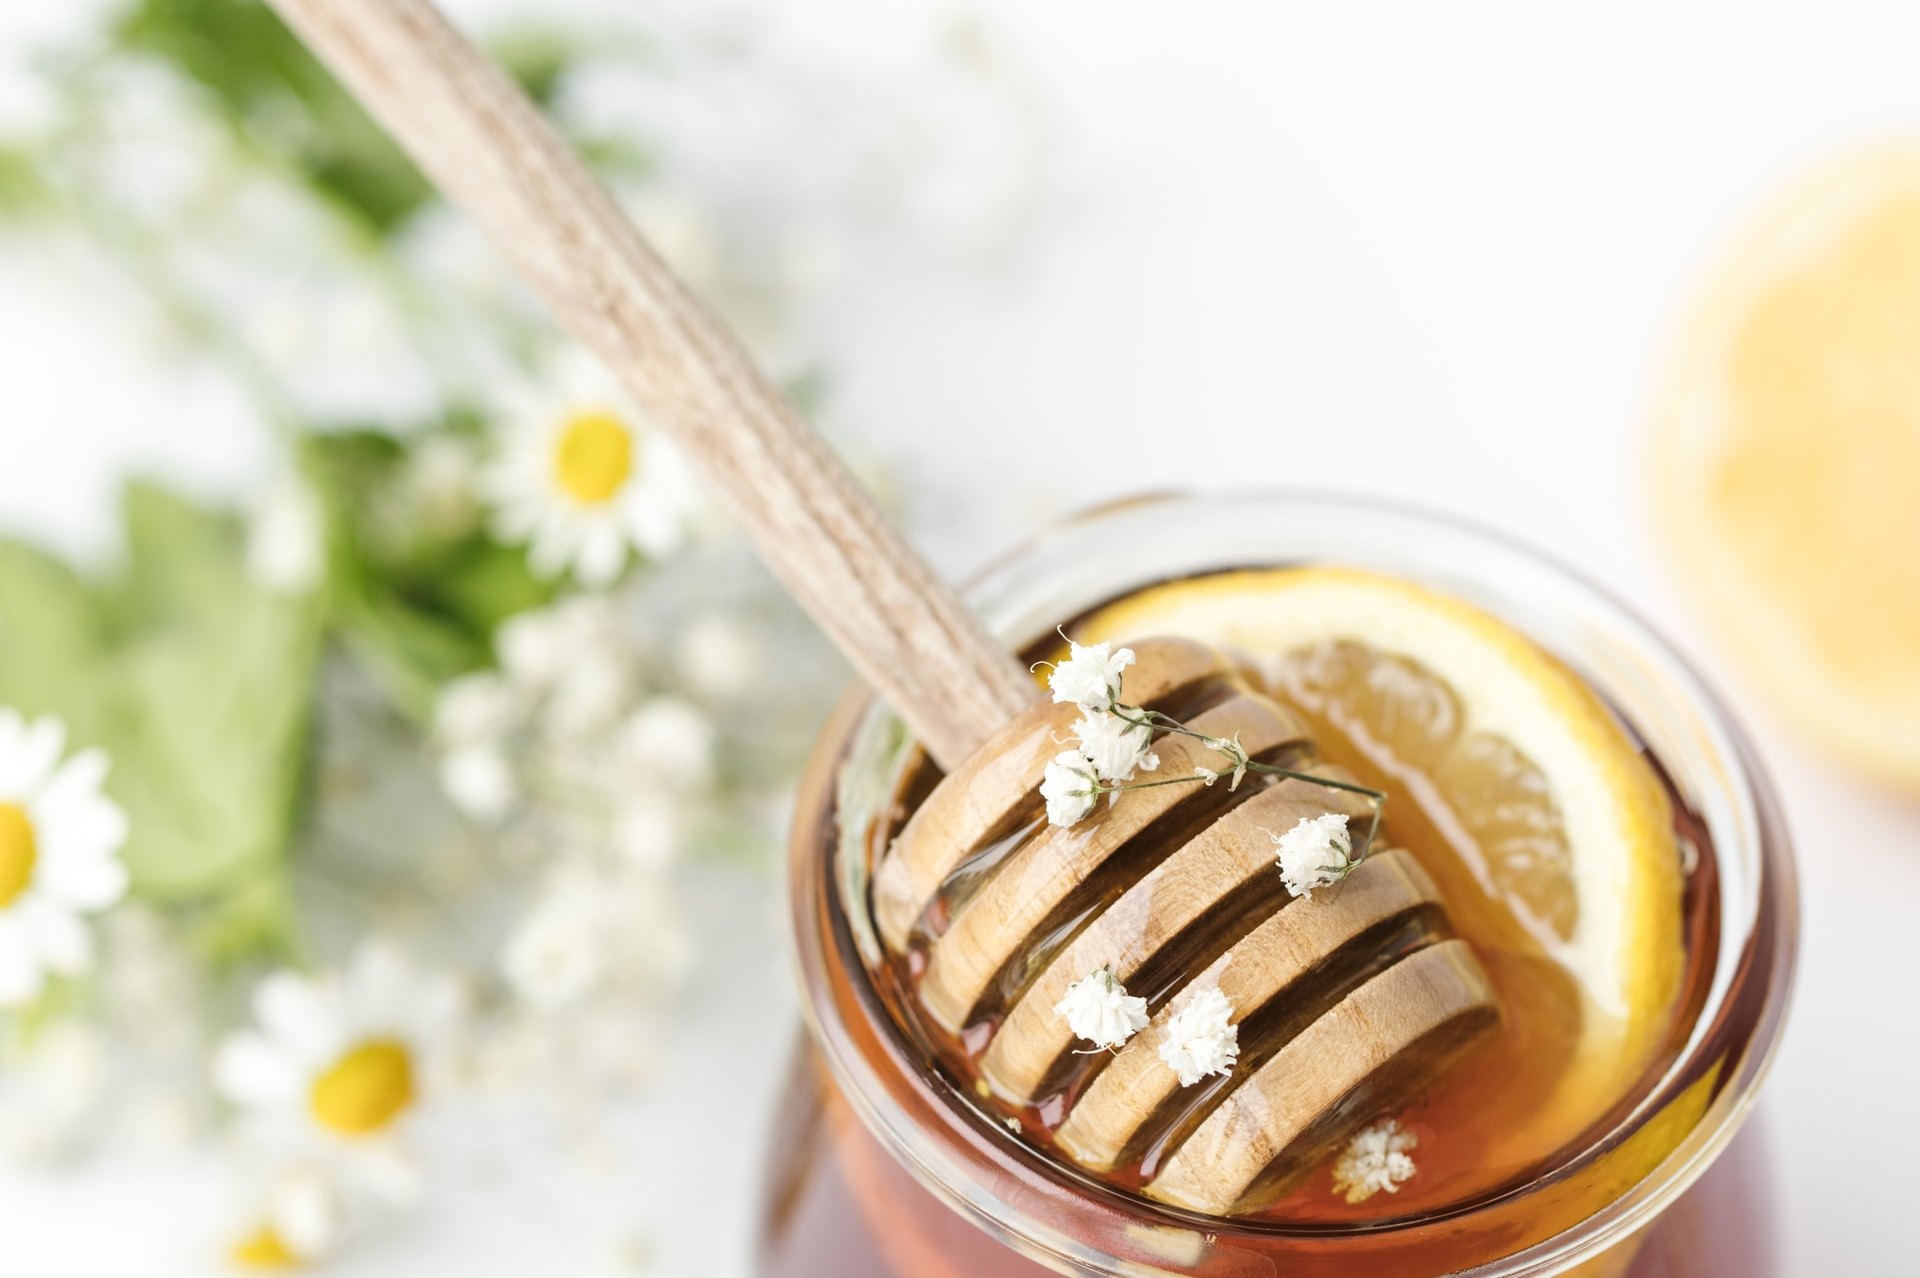 В России стали продавать мед из борщевика. Не вредно ли это